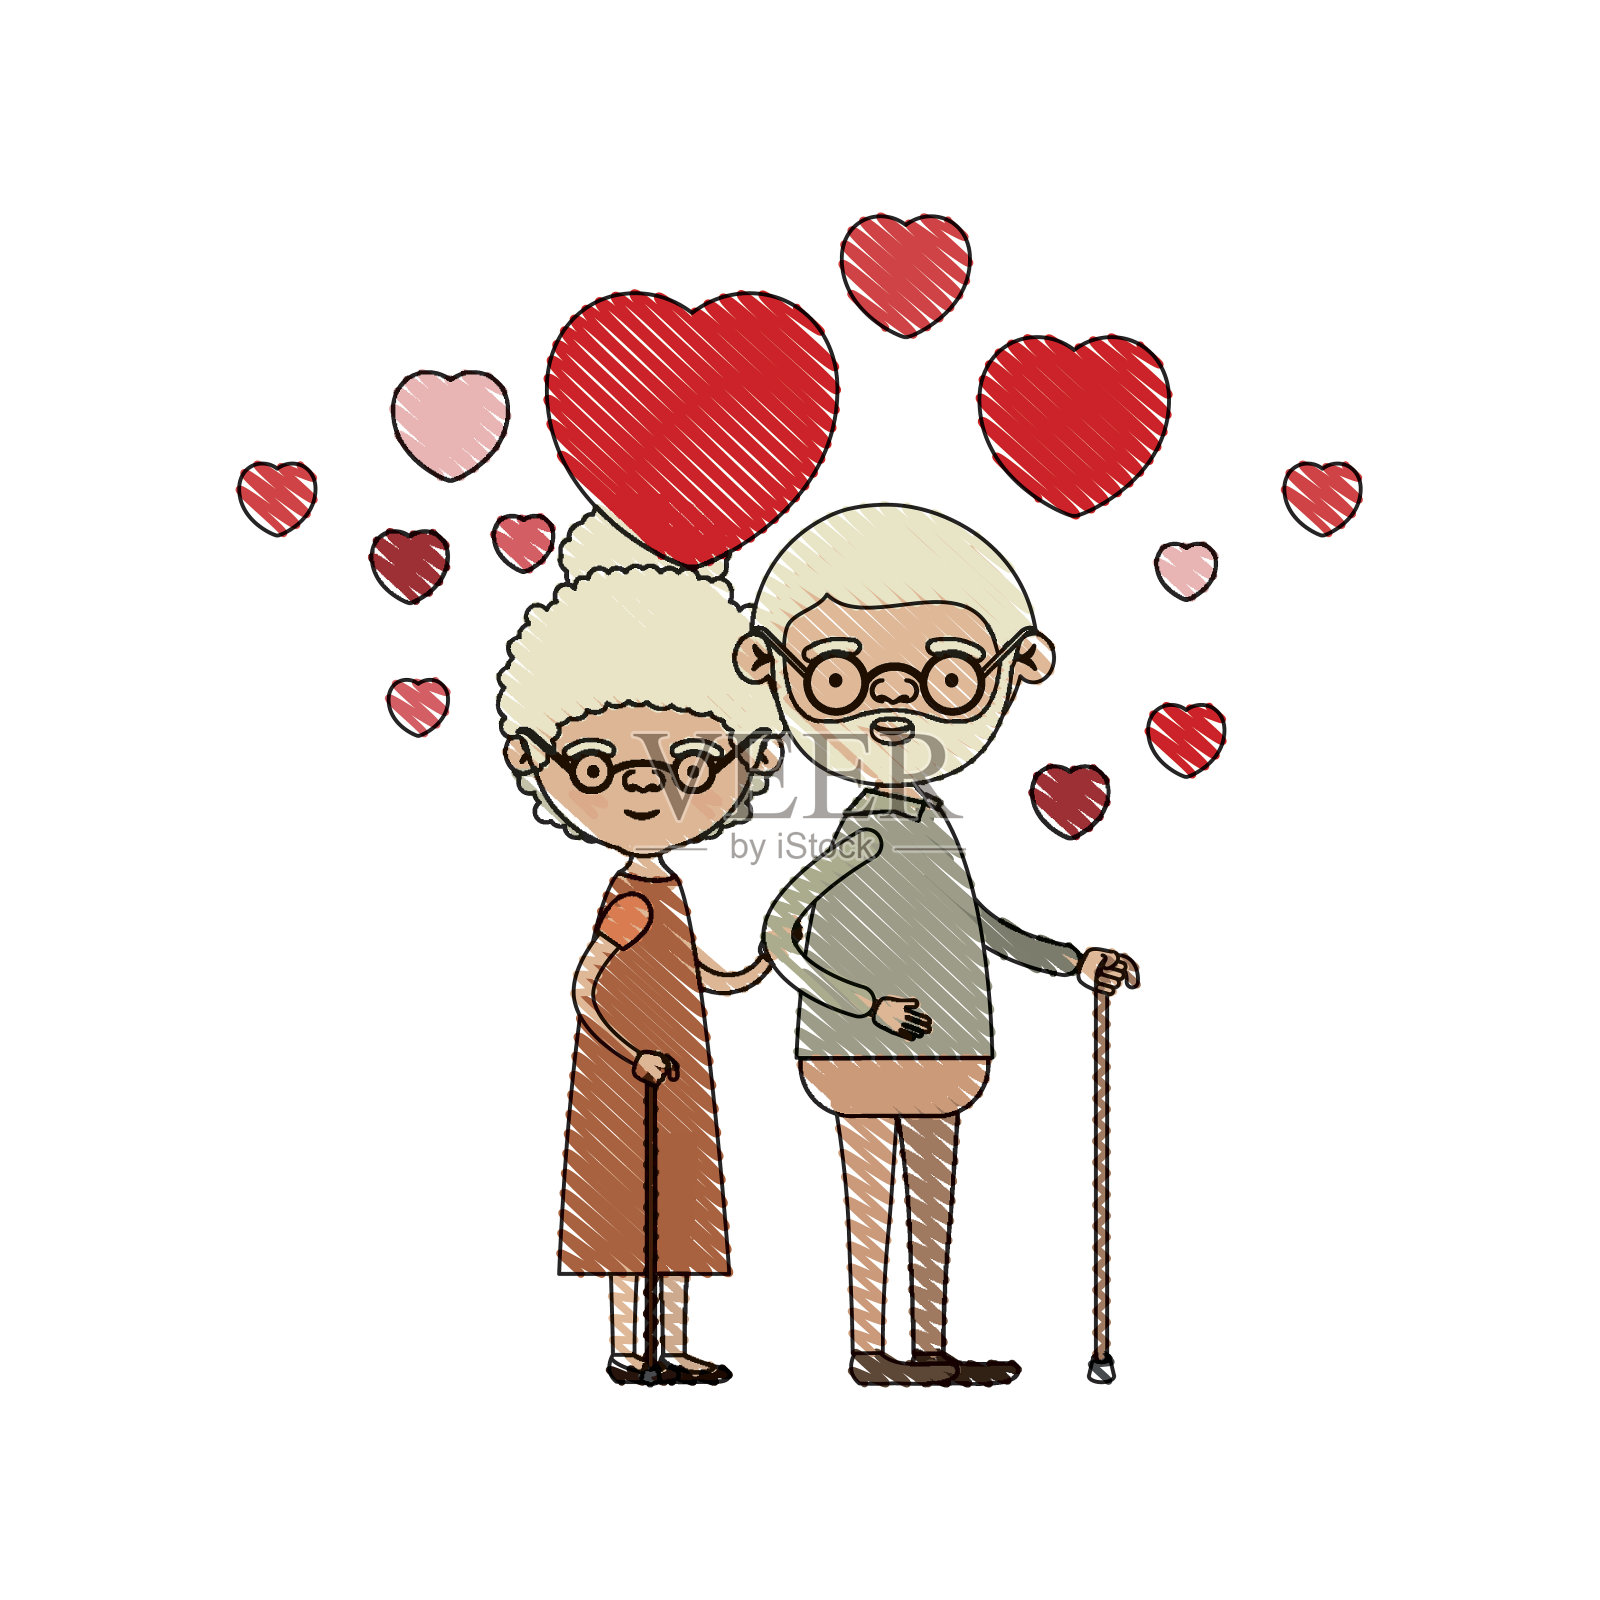 彩色蜡笔剪影漫画全身老人夫妇与浮动的心拥抱在拐杖的祖父和收集头发的祖母插画图片素材